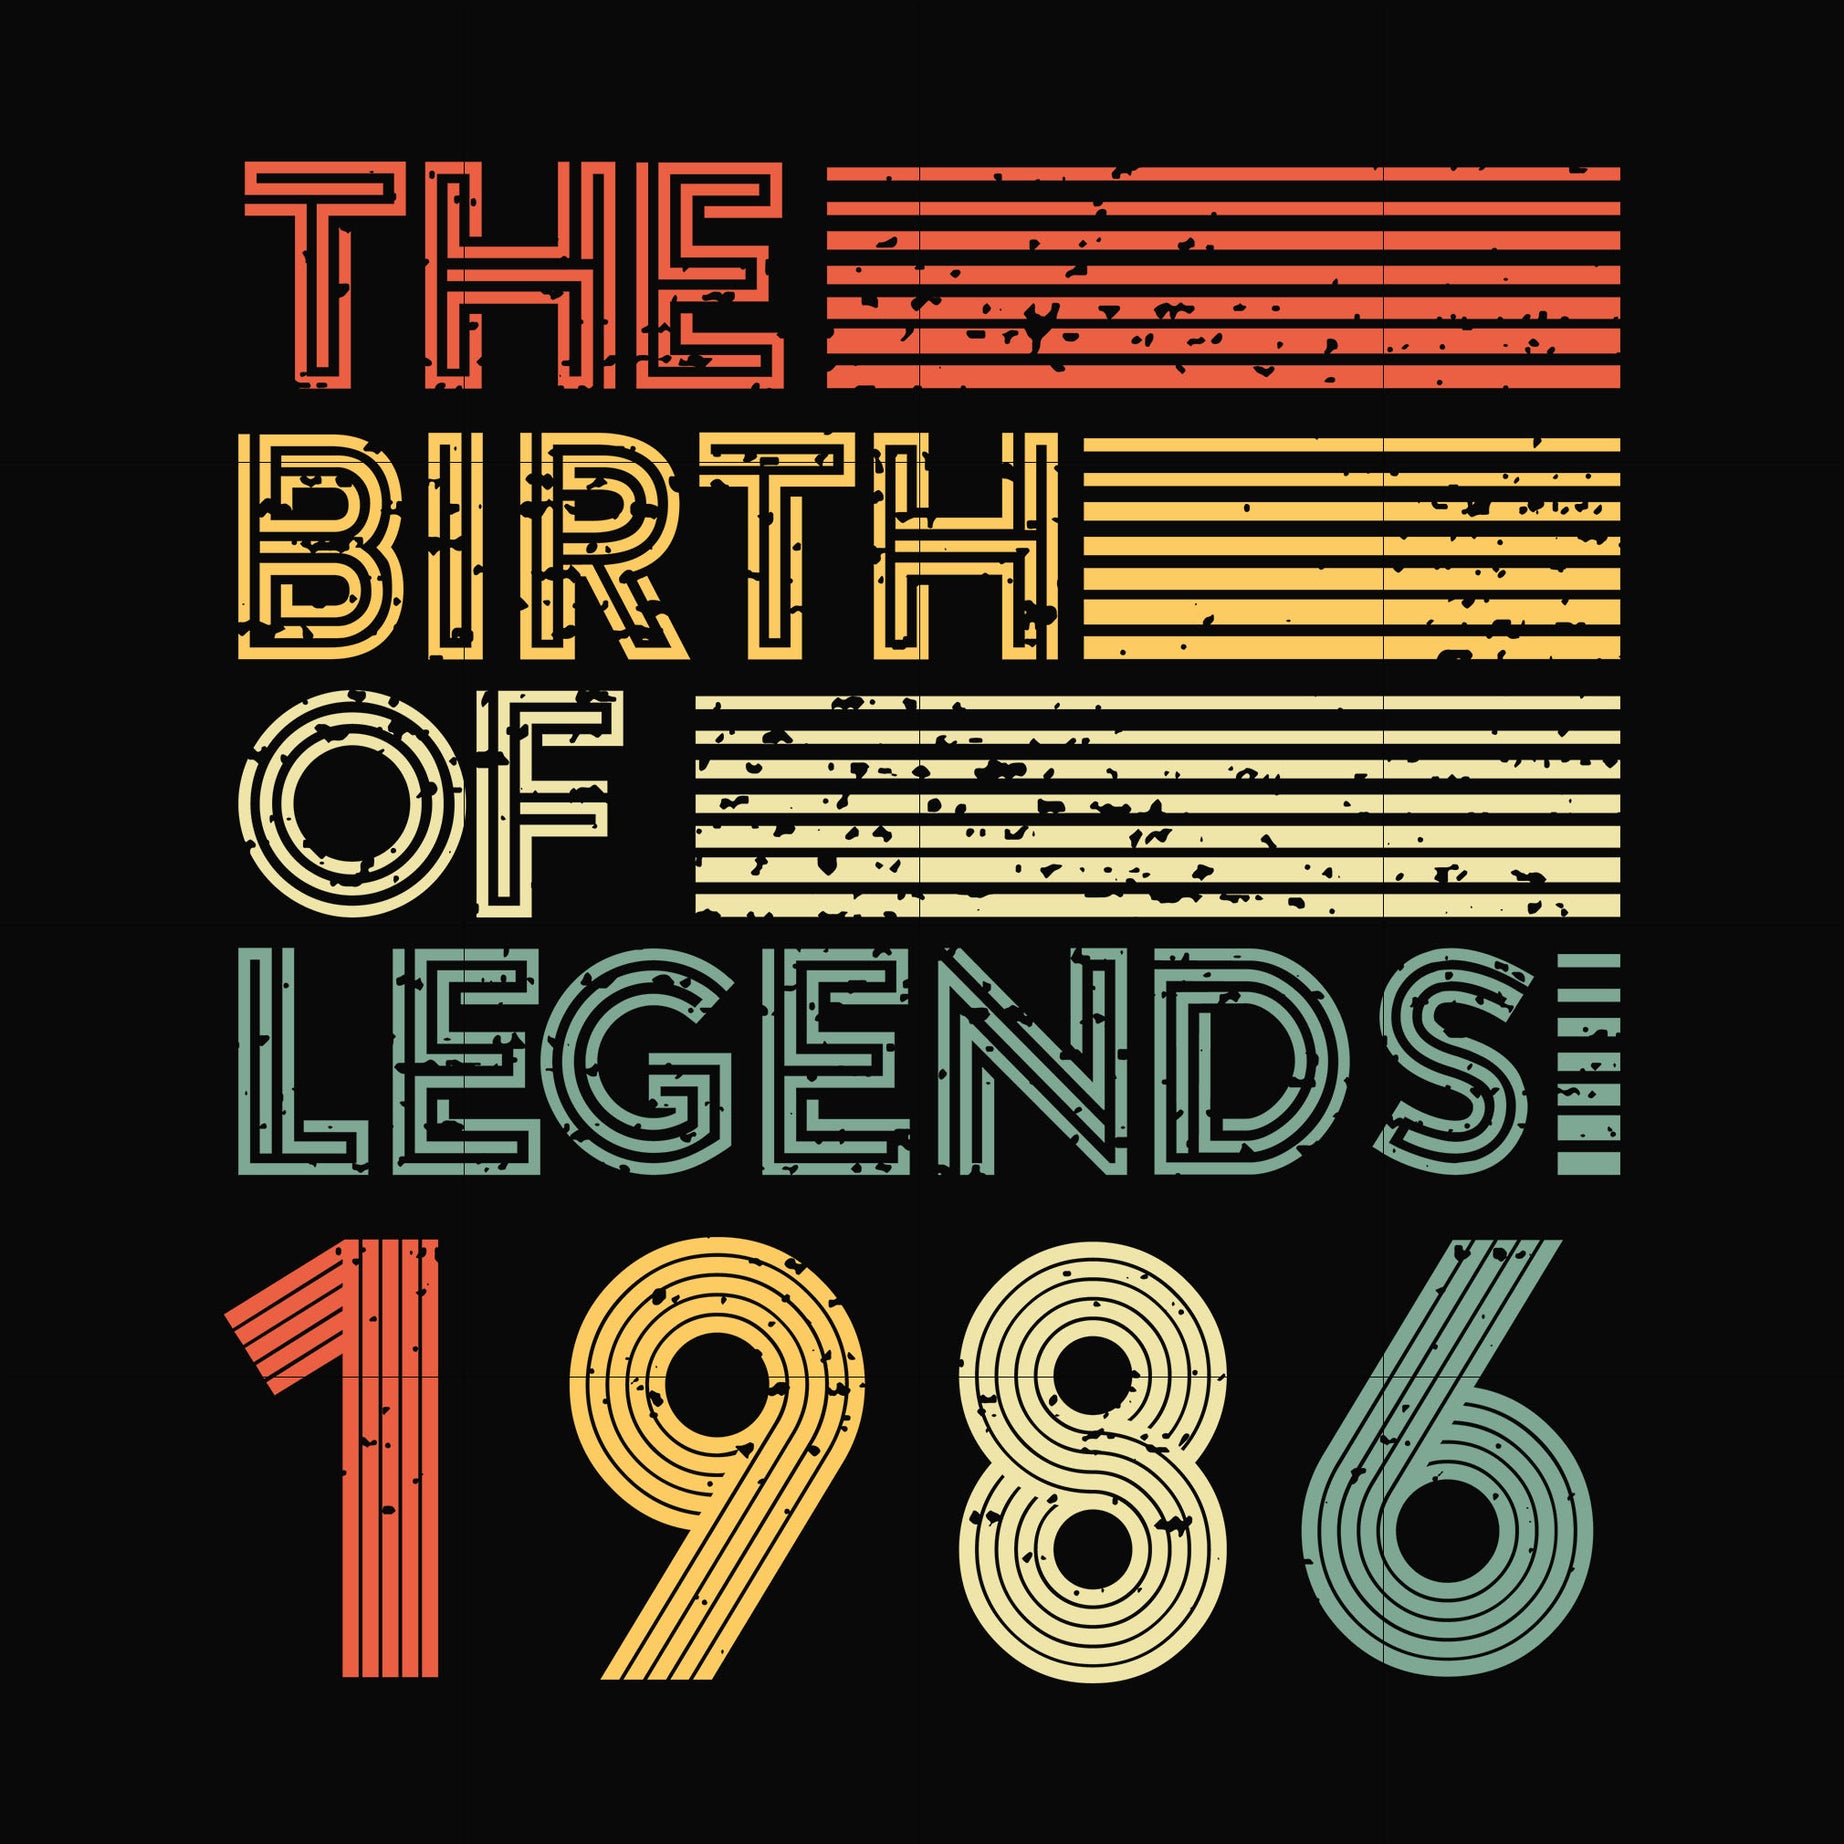 The birth of legends 1986 svg, png, dxf, eps digital file NBD0088